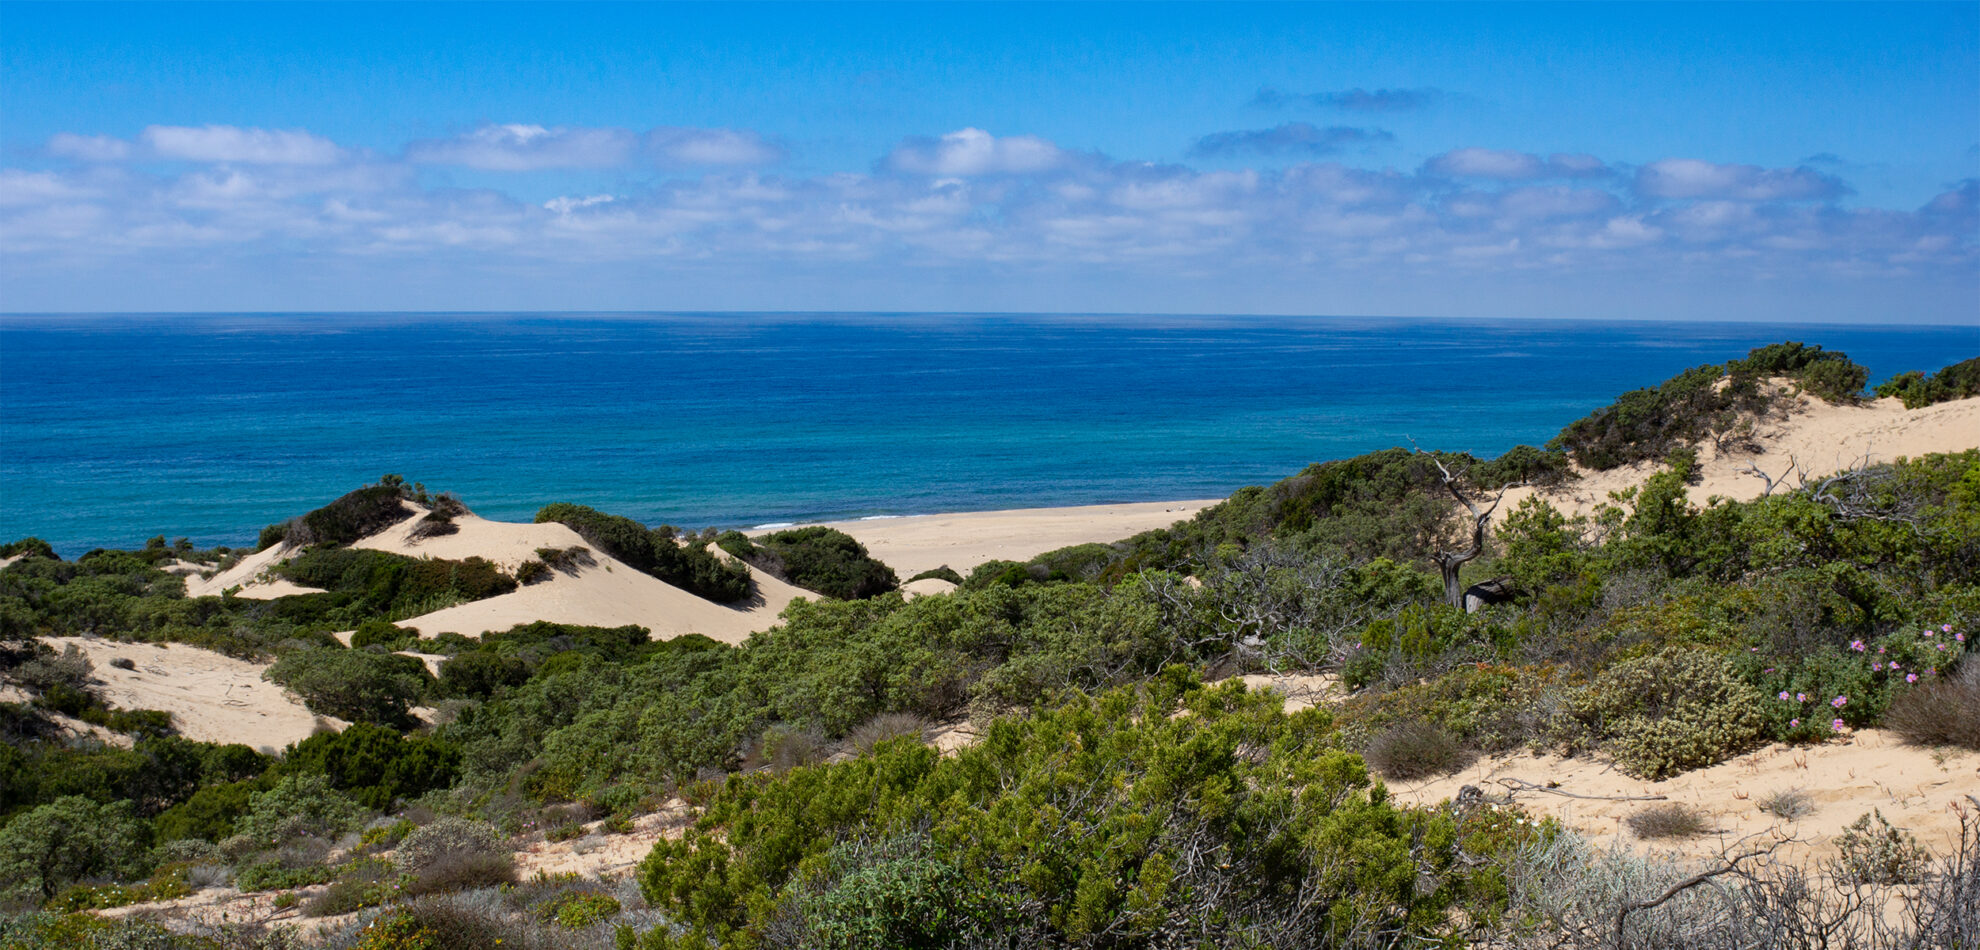 the lovely dune landscape of Piscinas